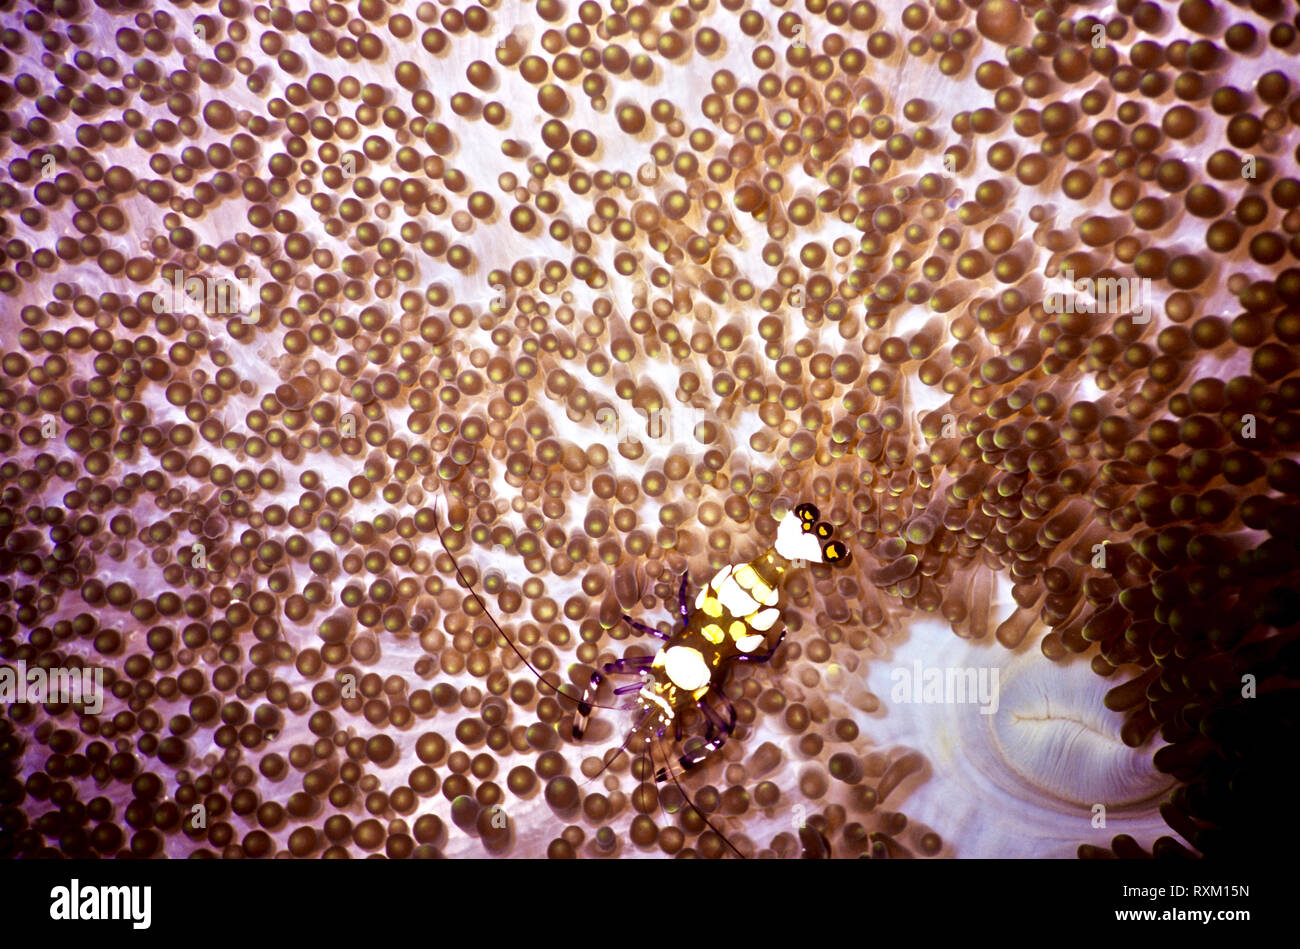 Questo è un tappeto (anemone Cryptodendrum adhaesivum) con un clown gamberetti (Periclimenes brevicarpus: 3 cms.) vicino l anemone la bocca nella parte inferiore destra dell'immagine. Il gamberetto possiede grandi macchie bianche sulla sua schiena e cinque piccole patch giallo in corrispondenza della punta del suo fan-come tail. Il rapporto tra le due specie è in relazione simbiotica. La vita di gamberi nel rifugio del anemone, la sensazione puntoria nematocisti in tentacoli di cui esso è immune. È stato riferito che, a sua volta, l anemone riceve gli scarti di cibo da dello zooplancton che le catture di gamberetti come preda. Mar Rosso egiziano. Foto Stock